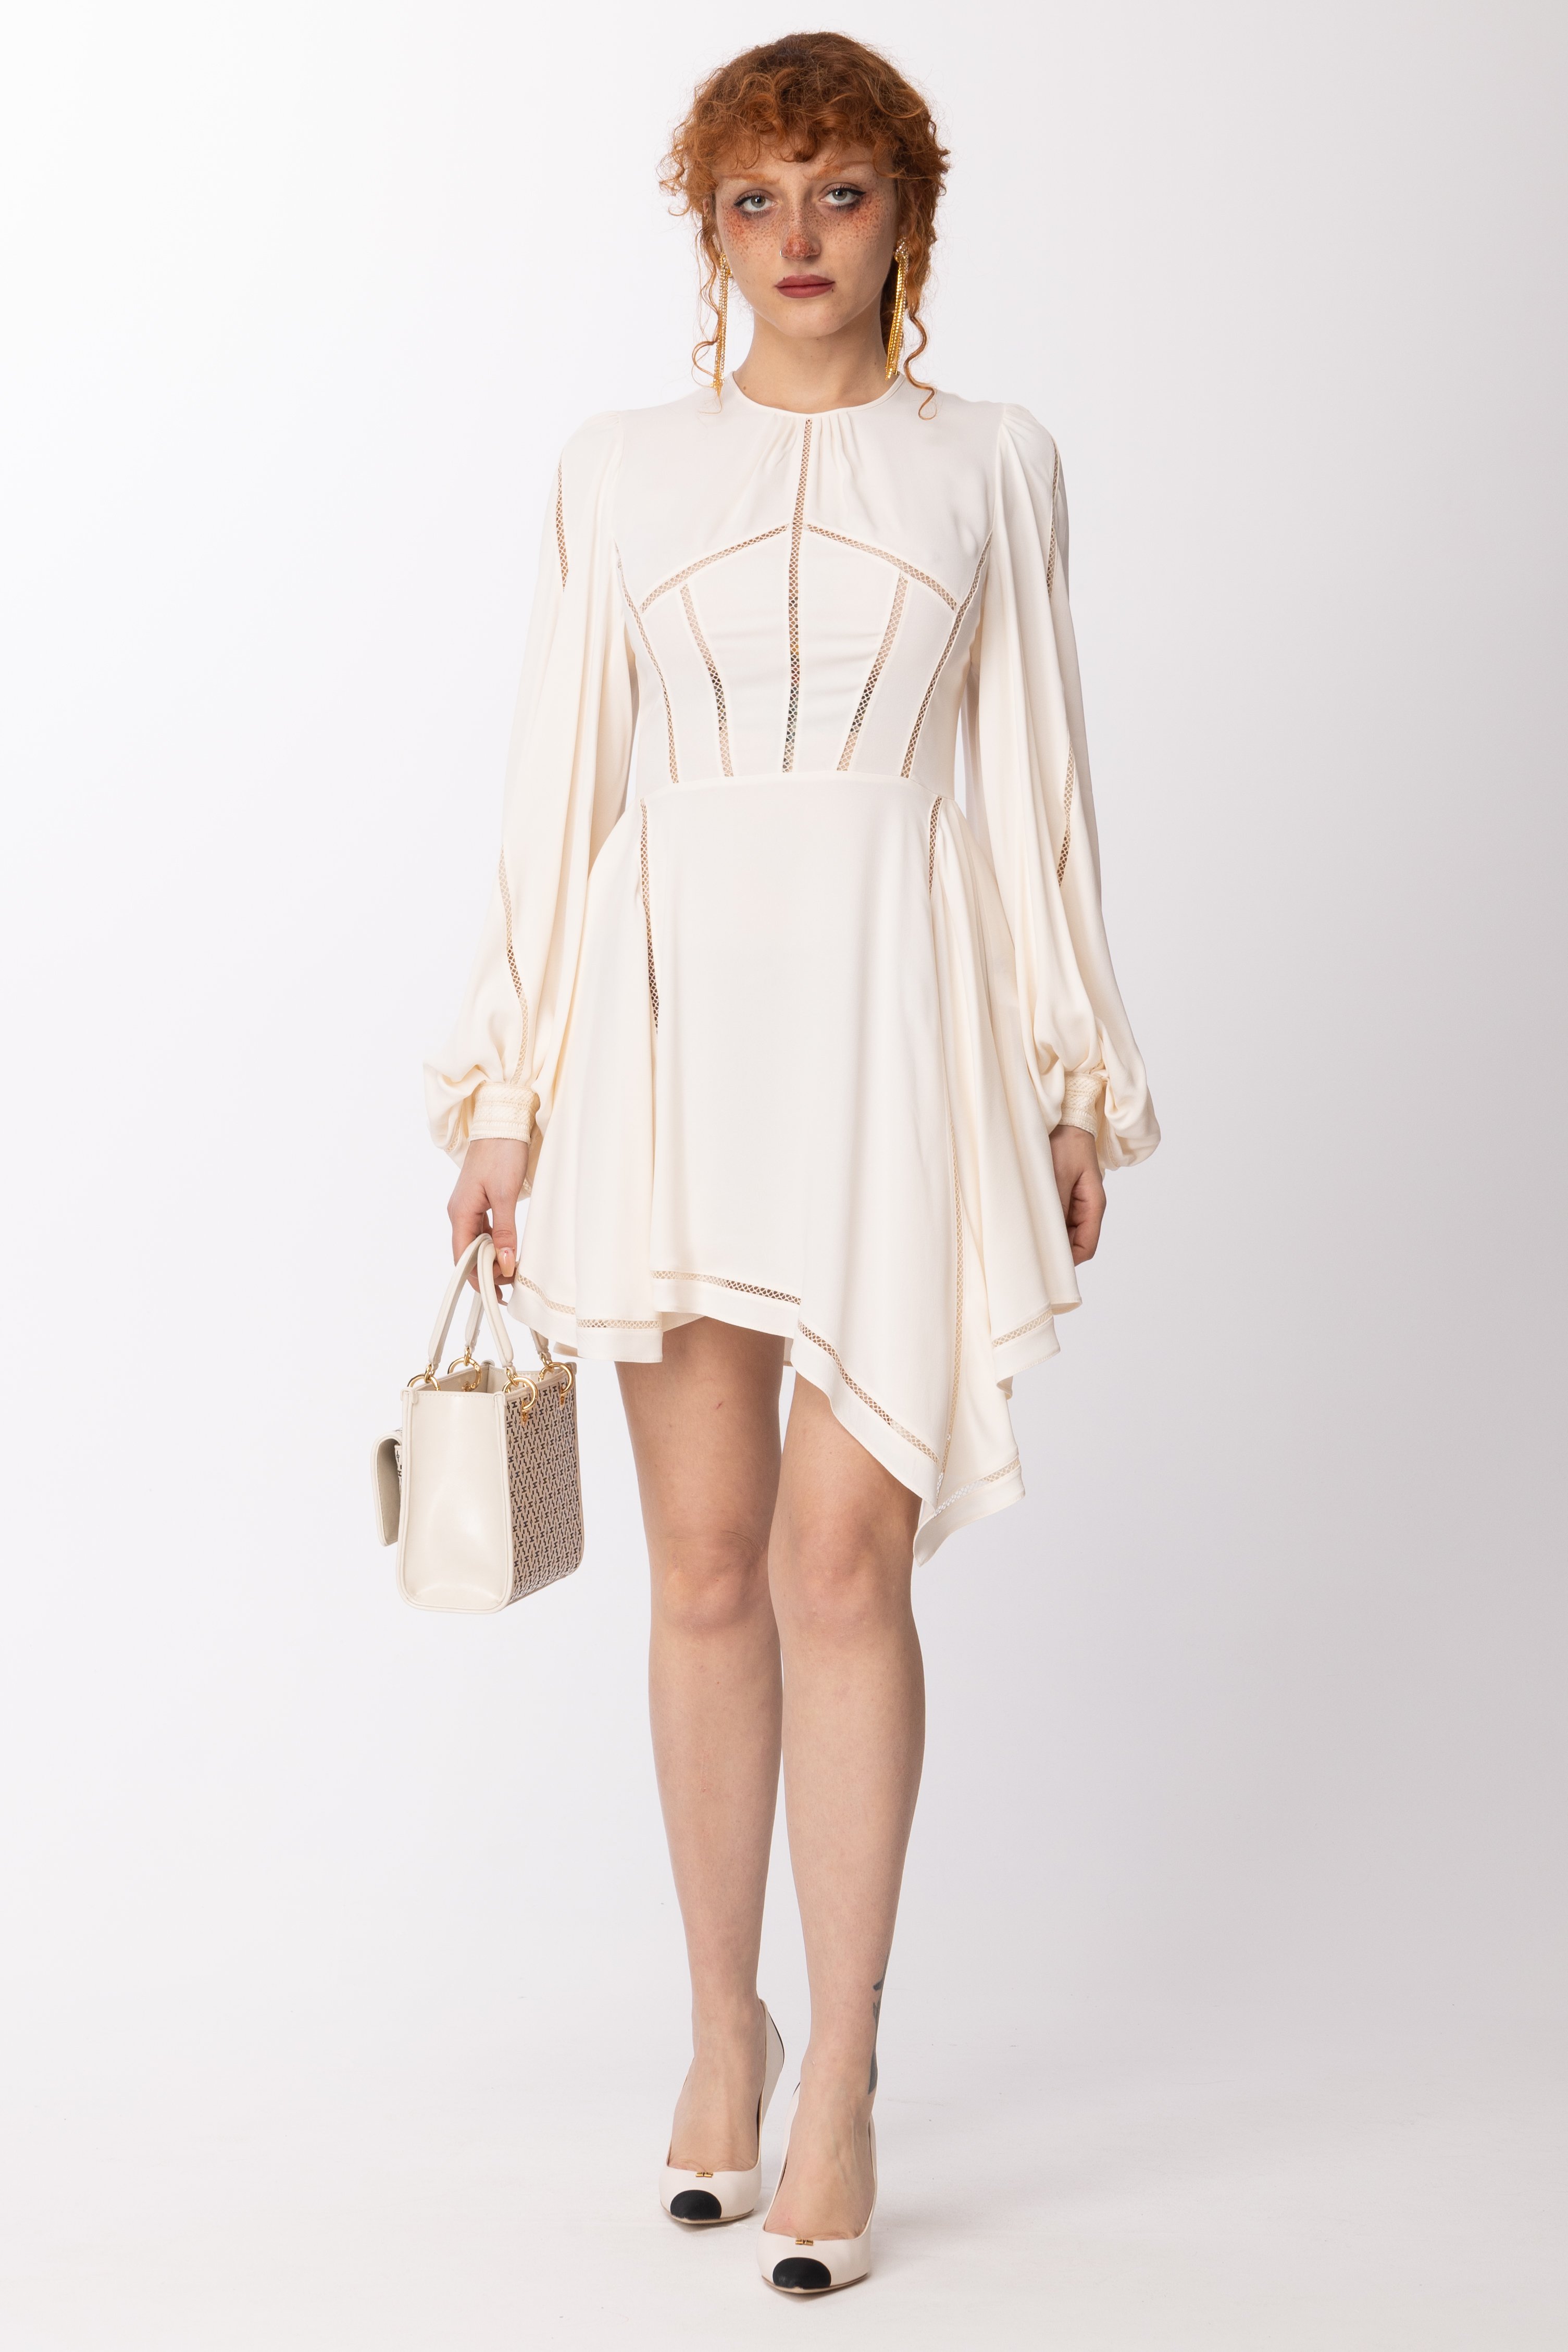 Podgląd: Elisabetta Franchi Asymetryczna mini sukienka z haftem Jour Burro